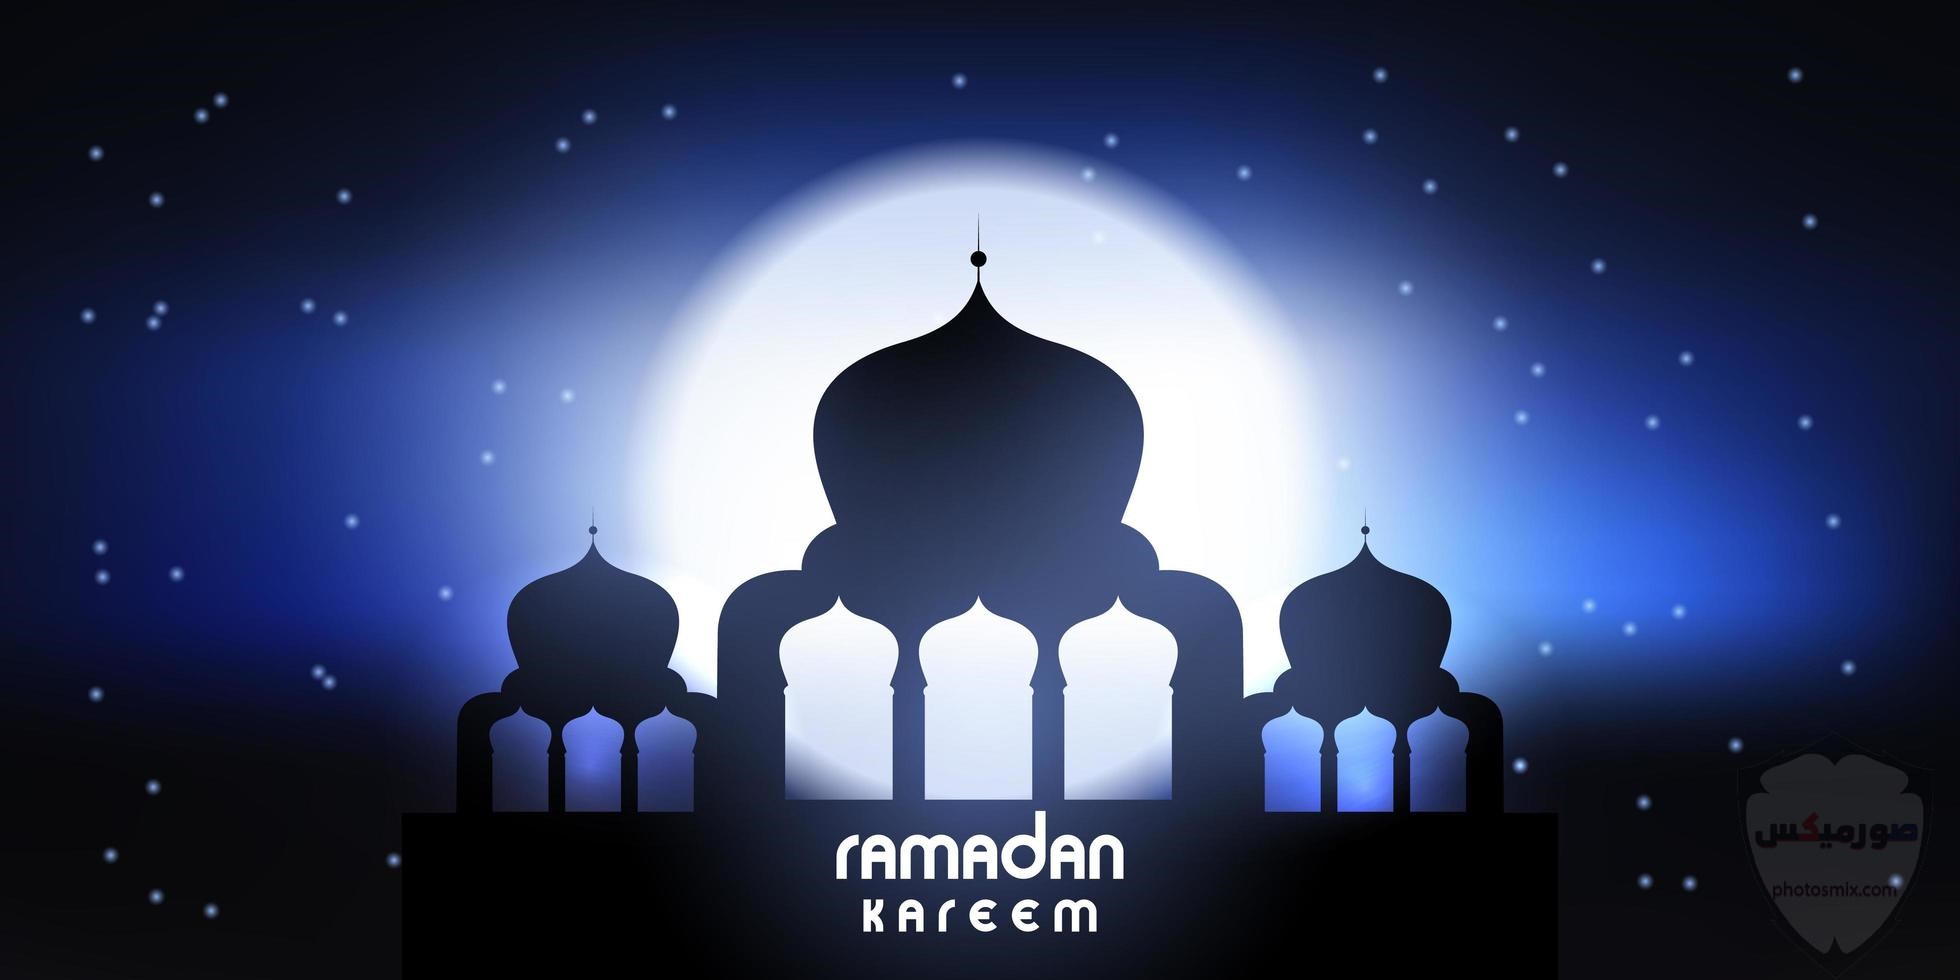 صور رمضان 2020 اجمل صور فوانيس وادعية رمضان 8